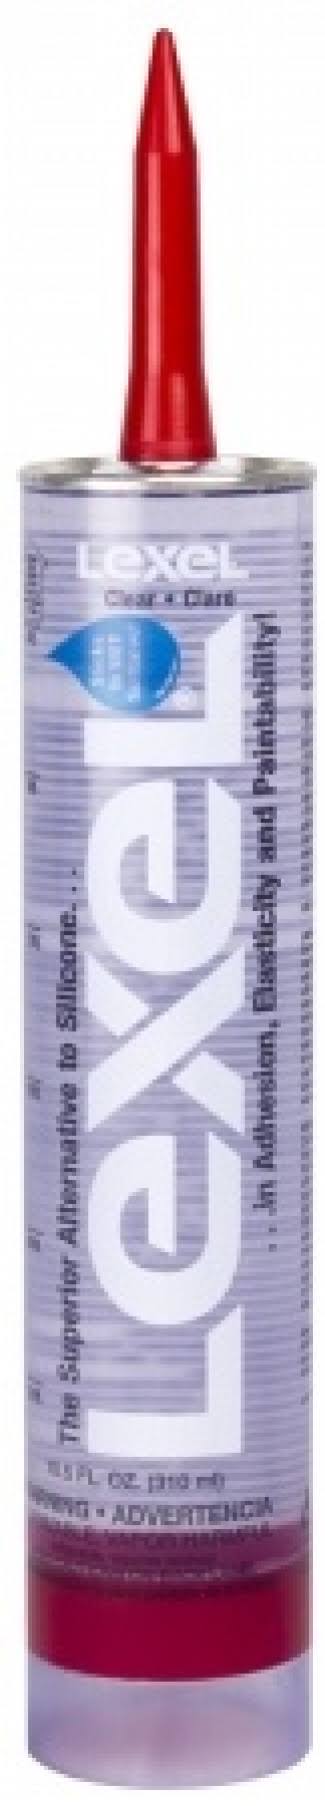 Sashco 13010 Lexel Sealant Adhesive Caulk - 10.5oz